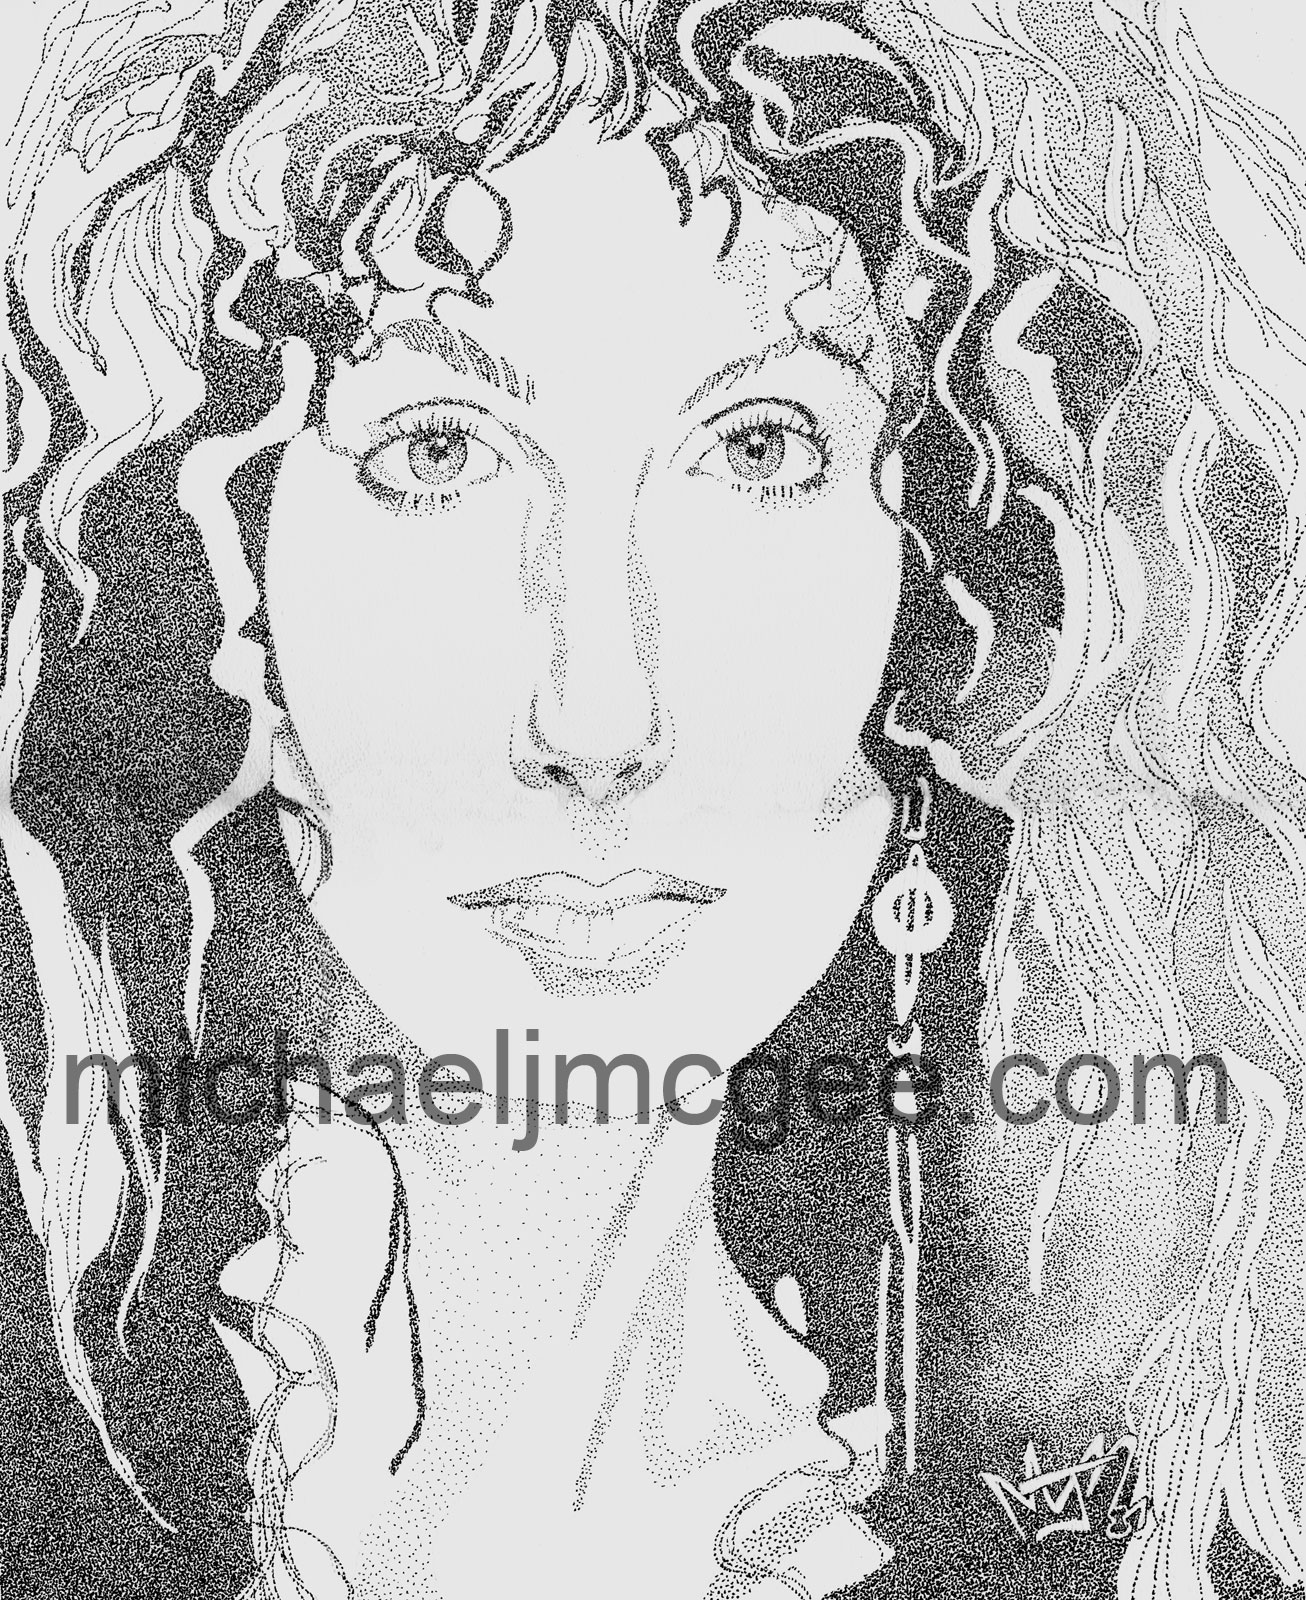 Cher / MJM Artworks / michaeljmcgee.com